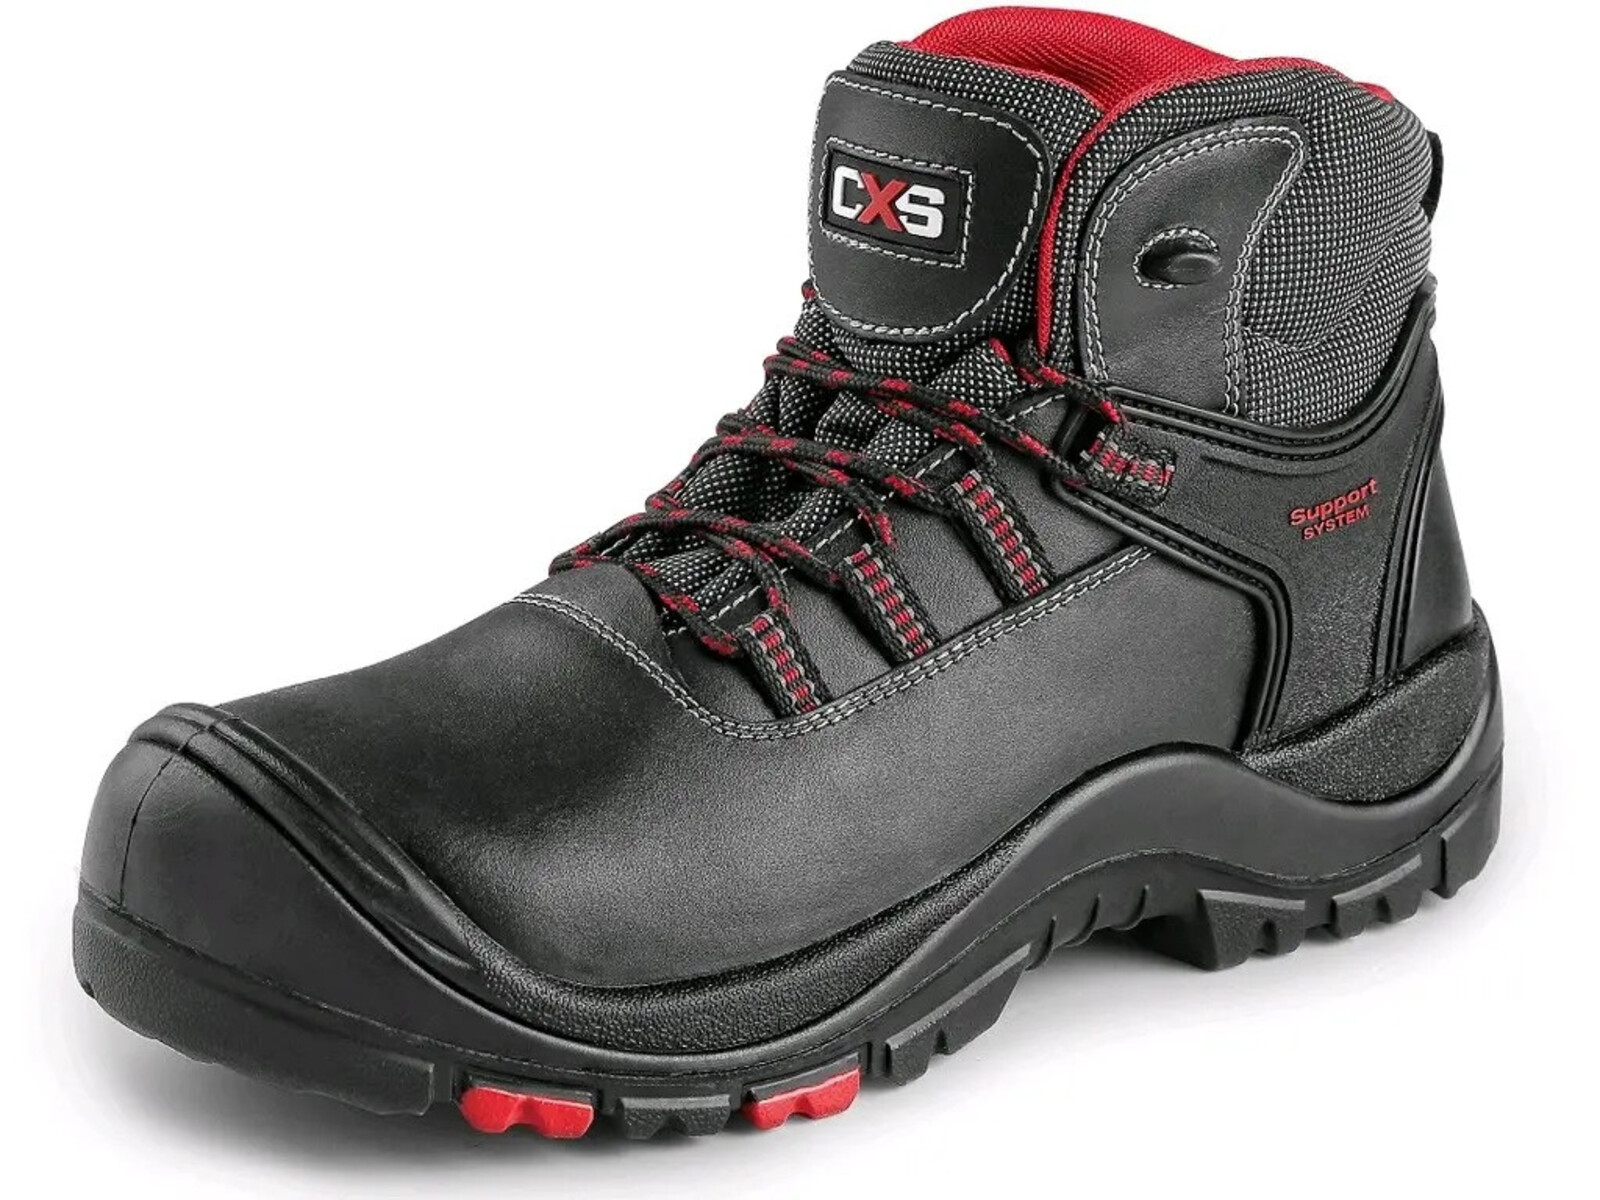 Bezpečnostná členková obuv CXS Rock Granite S3 SRC HRO MF - veľkosť: 42, farba: čierna/červená